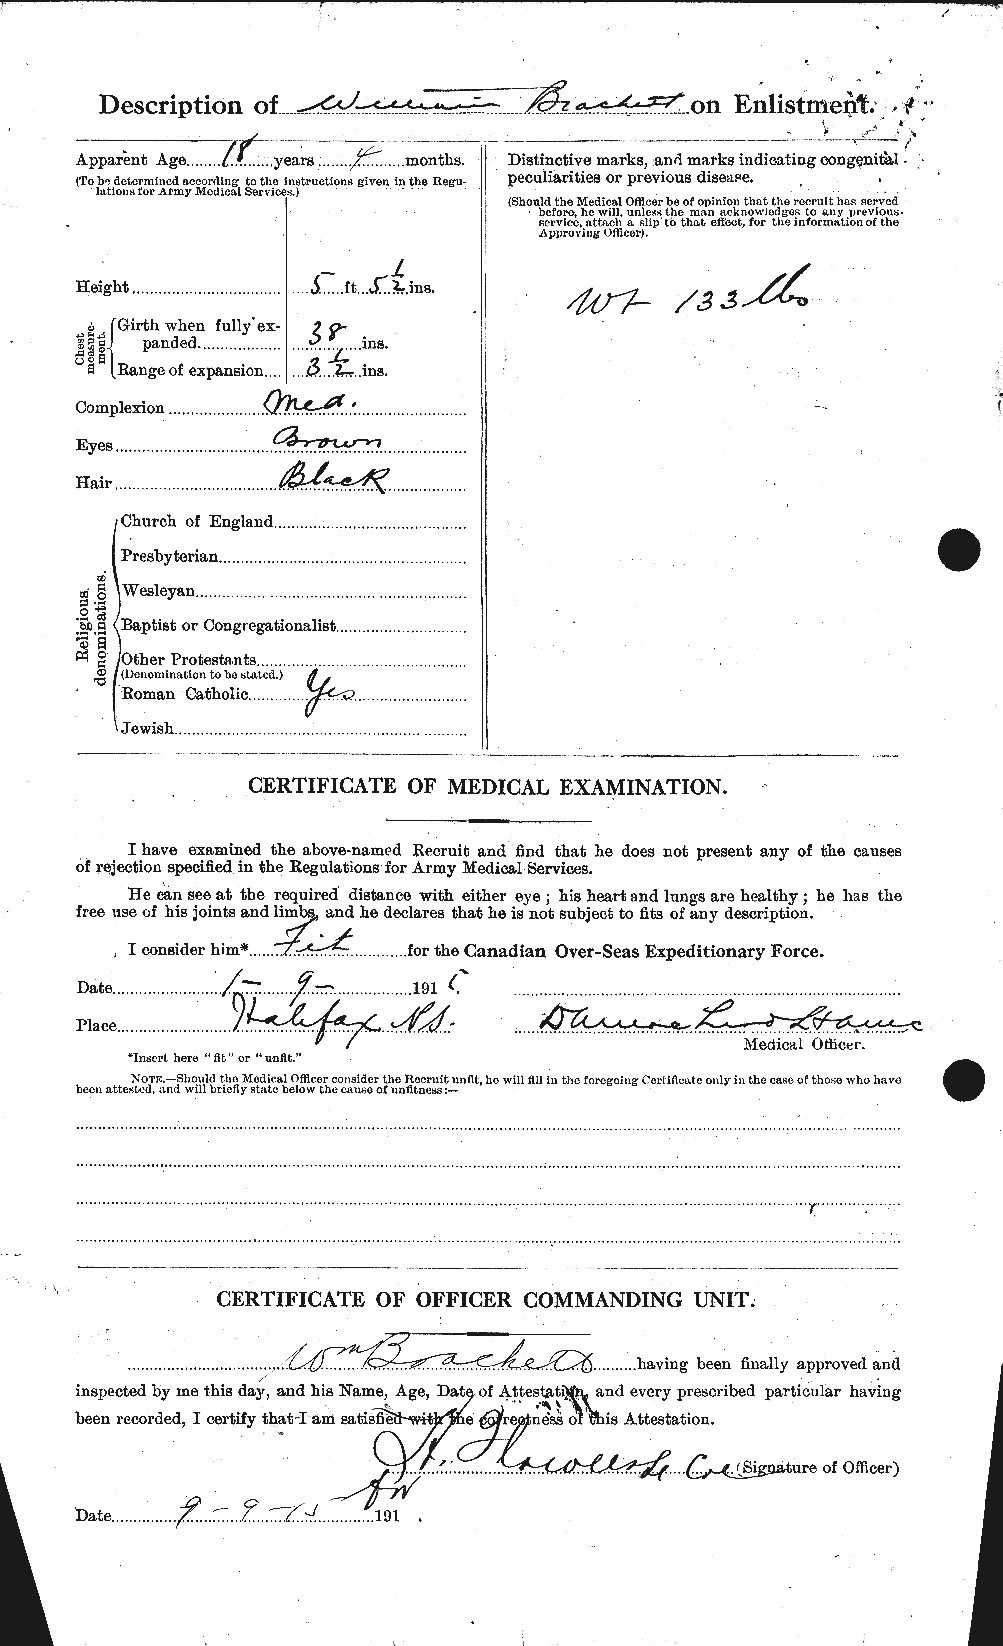 Dossiers du Personnel de la Première Guerre mondiale - CEC 254742b